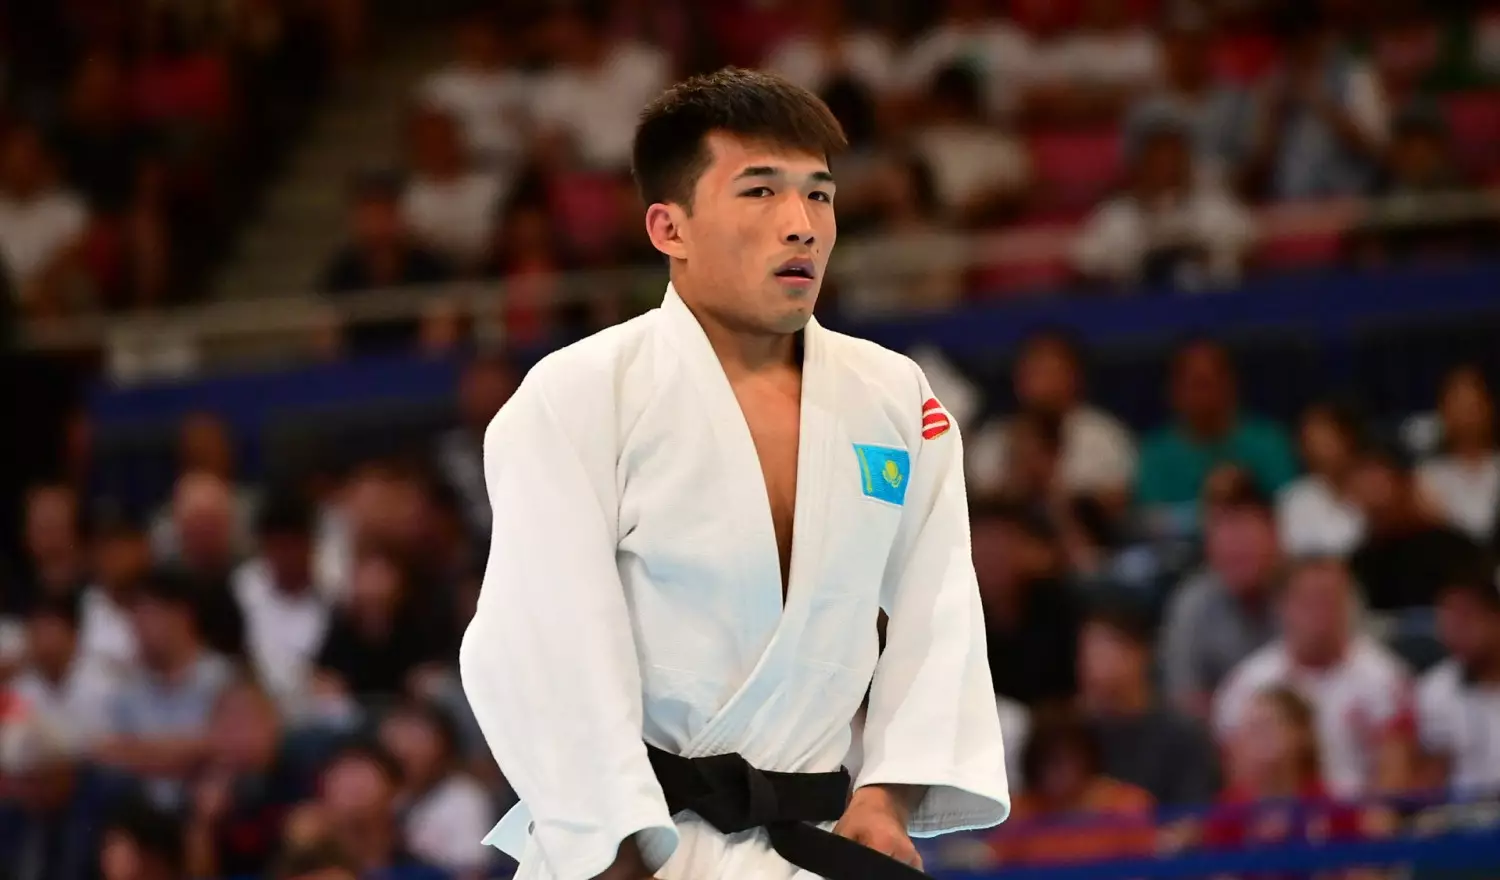 Олимпиада: Ғұсман Қырғызбаев фавориттердің бірі – кореялық дзюдошыны жеңді